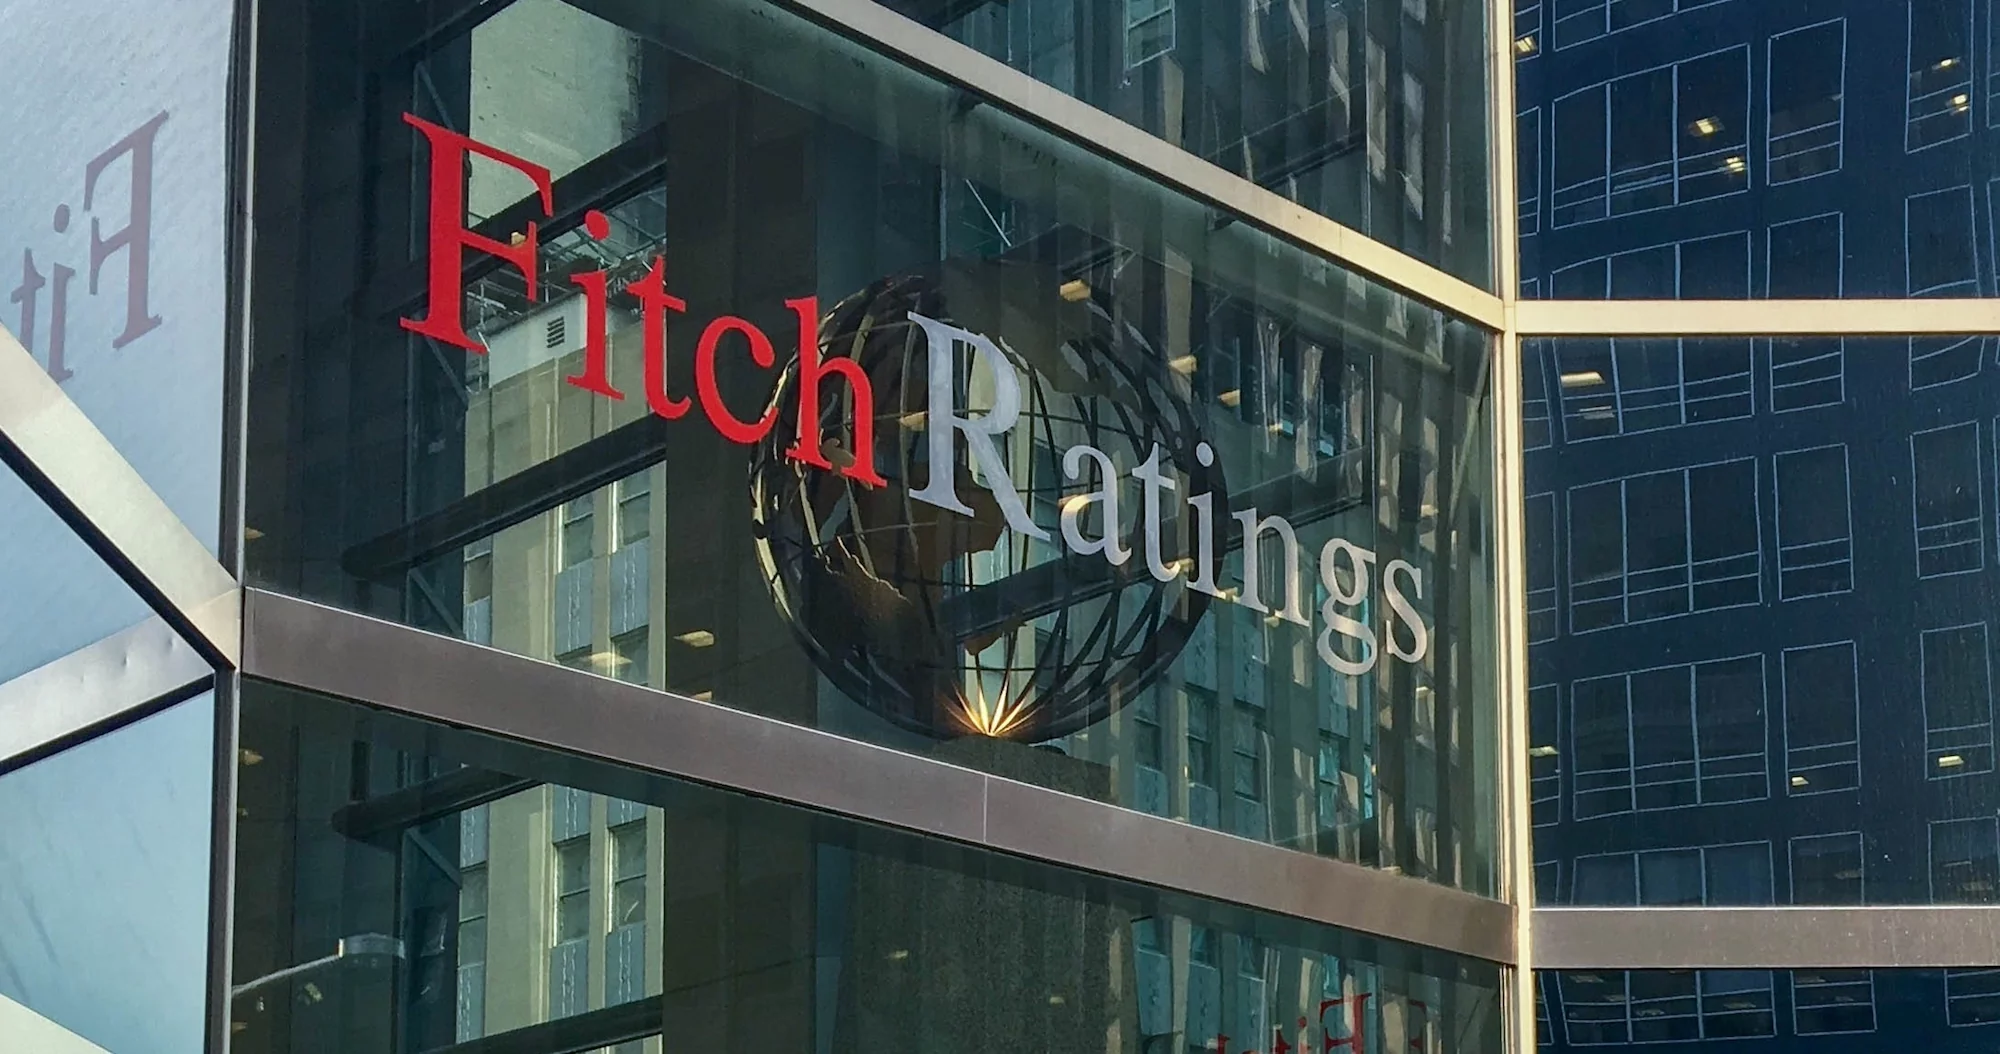 Agentura Fitch snížila rating USA “katastrofa v oblasti řízení, špatné fiskální hospodaření” kvůli dluhu a válečným výdajům